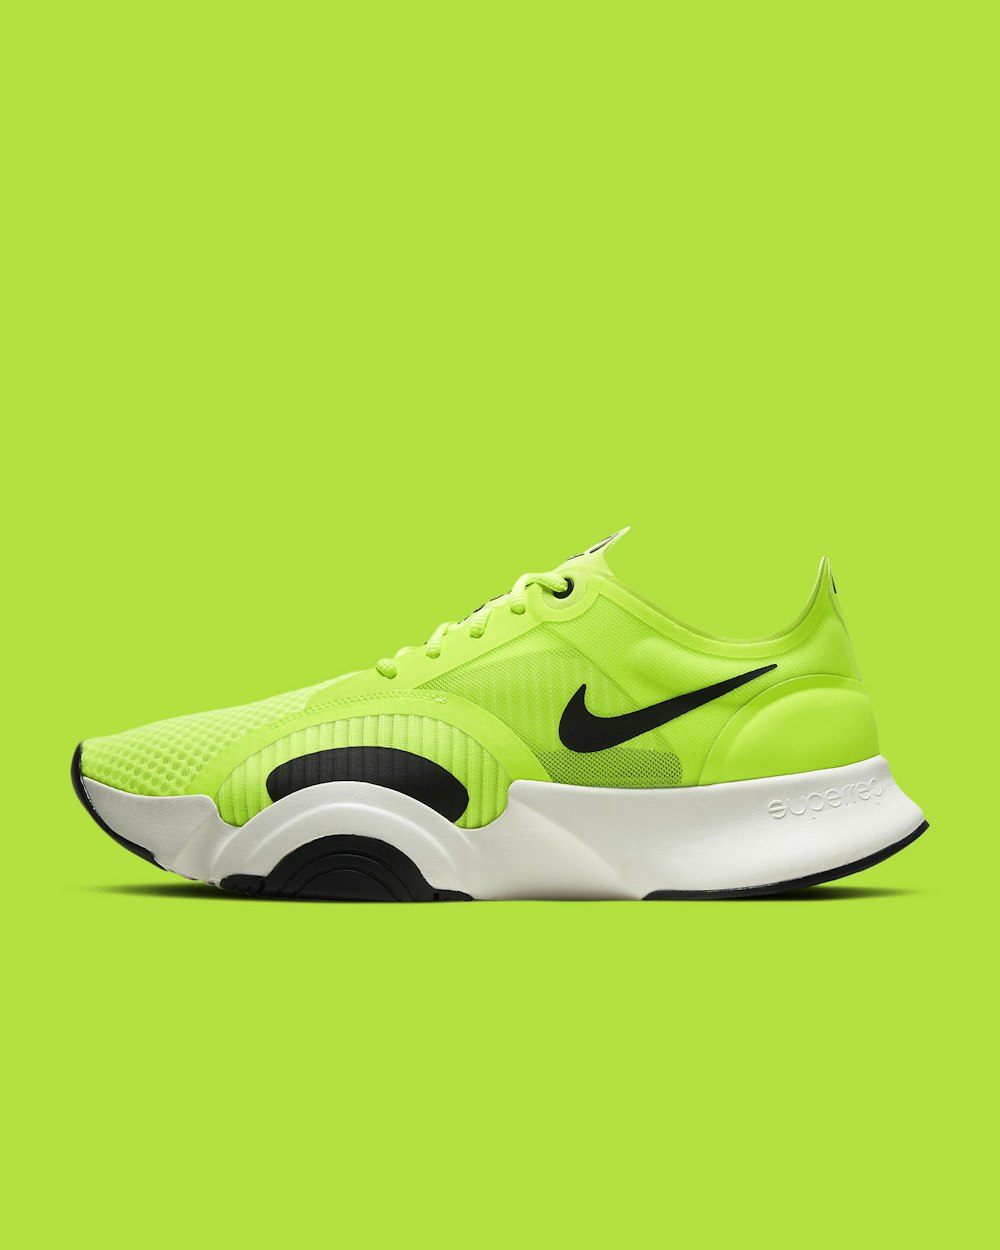 Grüner und schwarzer Nike Sportschuh